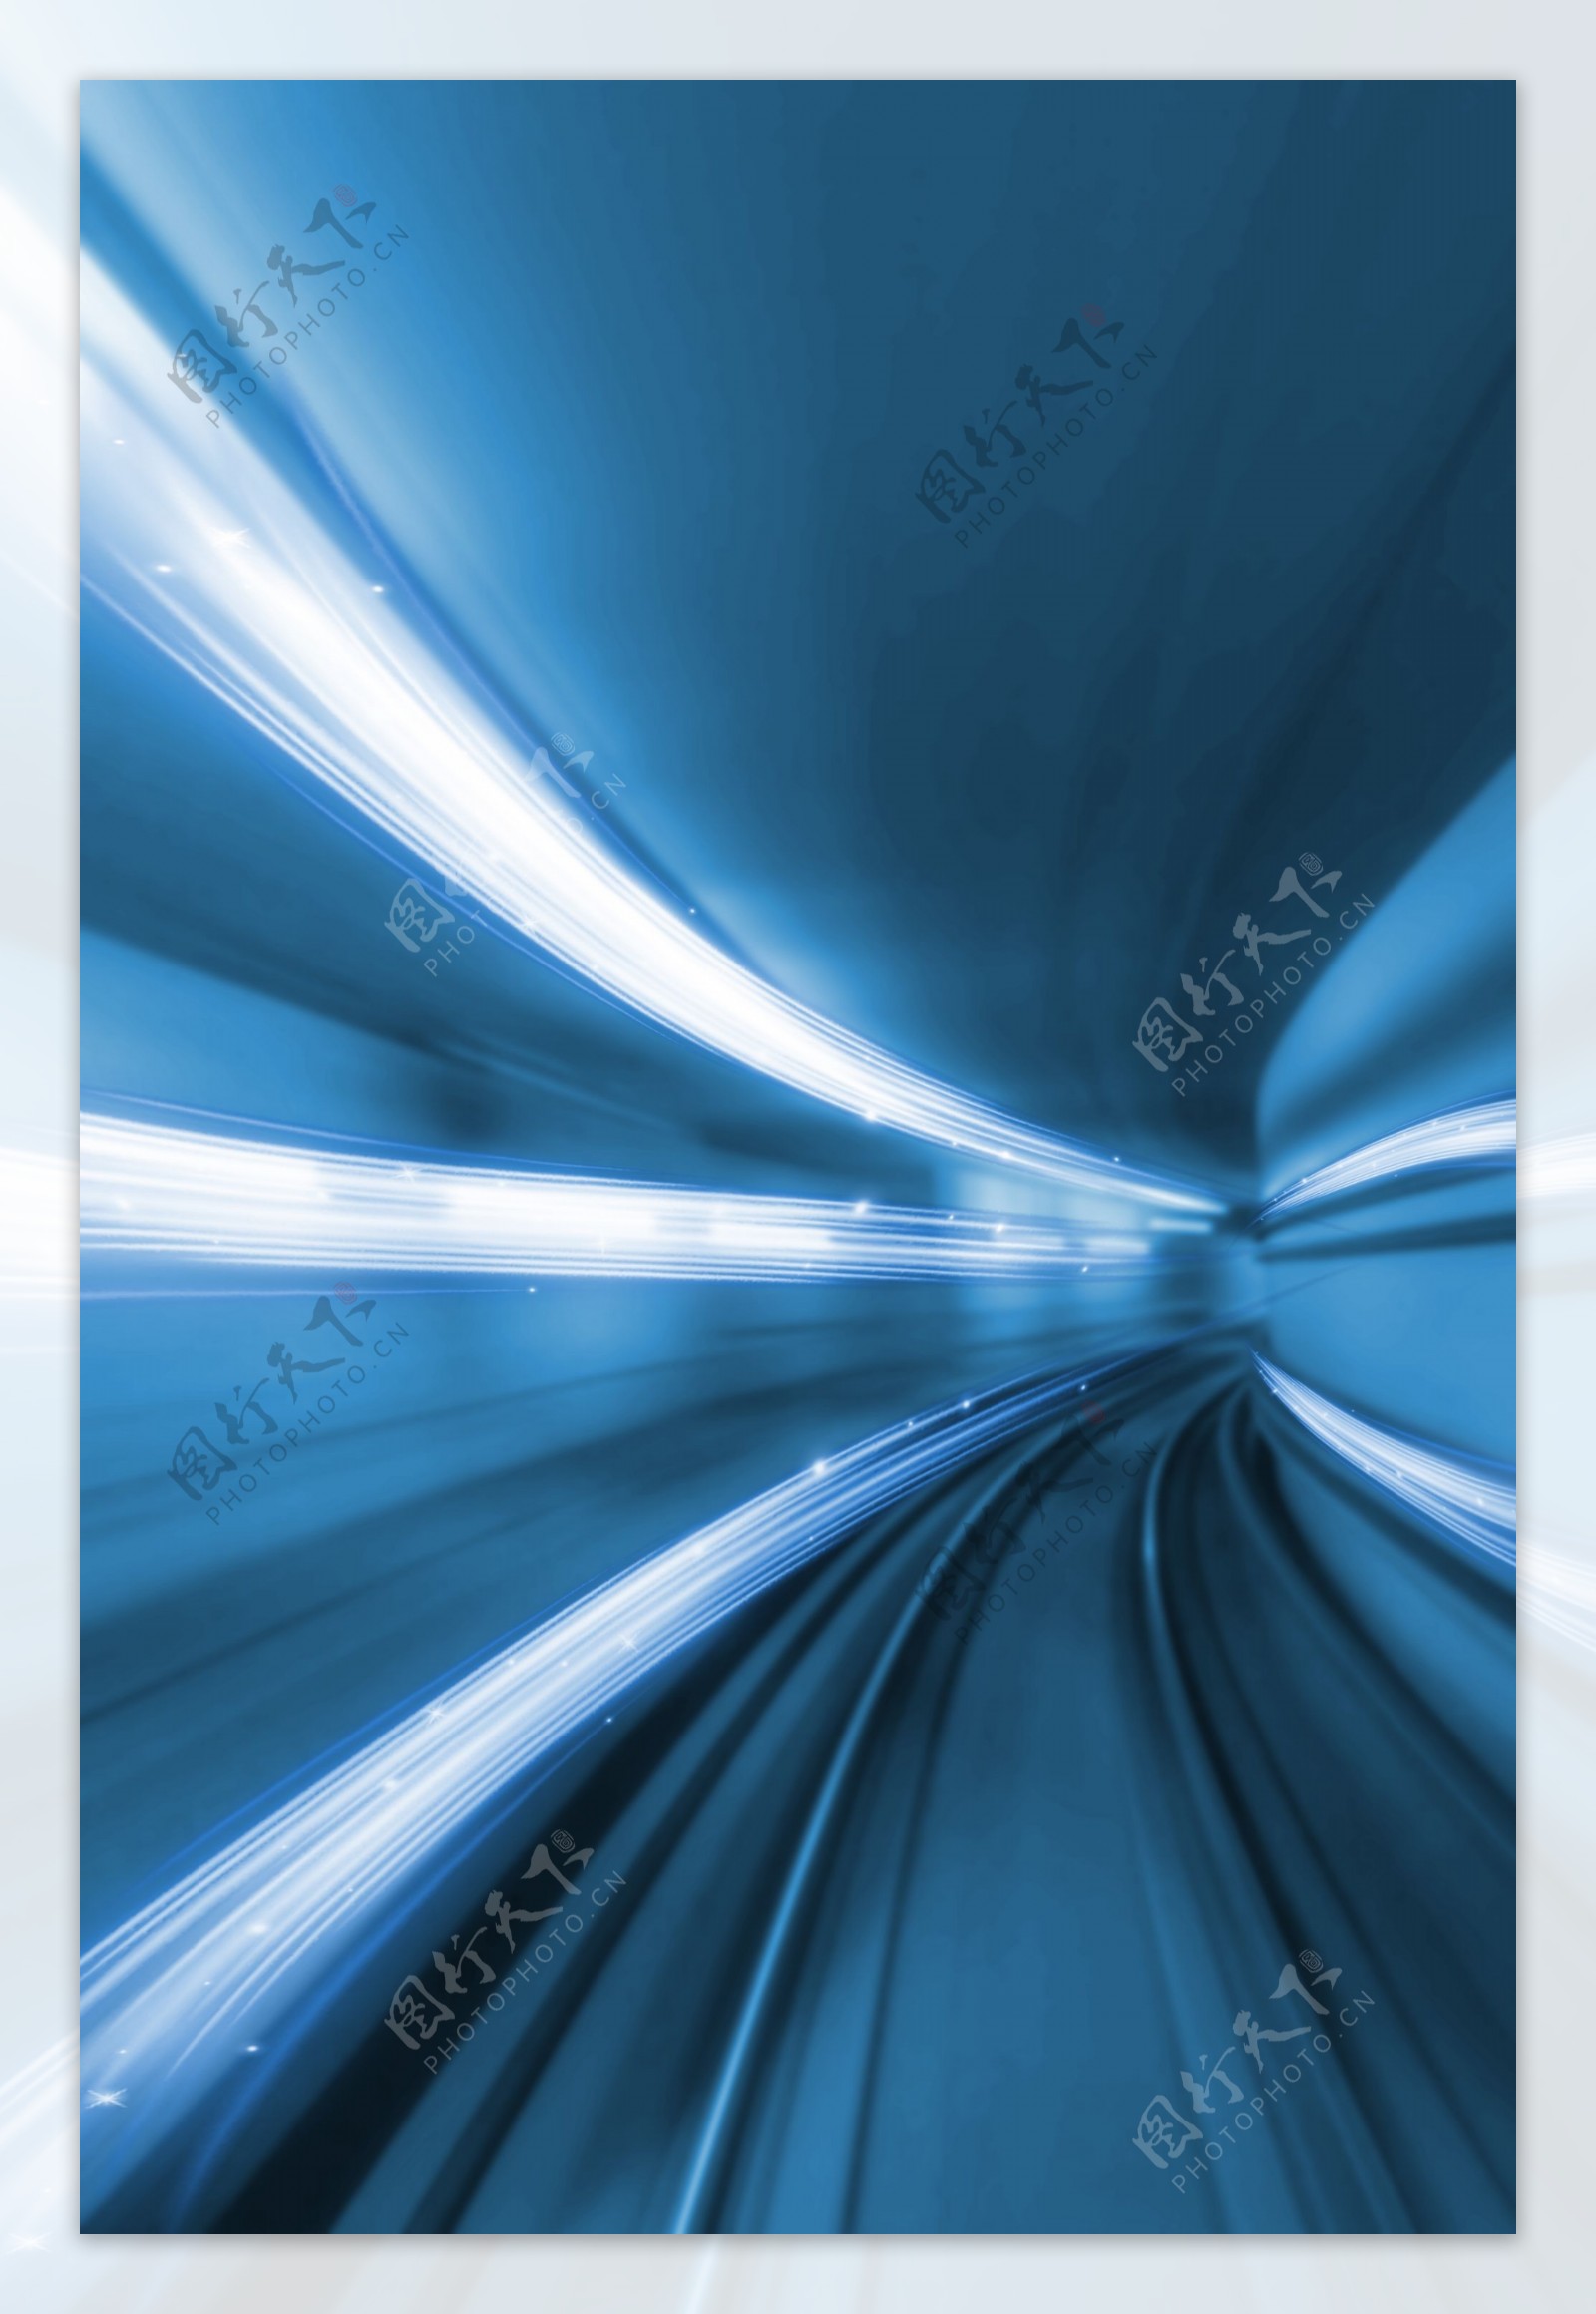 隧道灯光线条动感通道背景素材